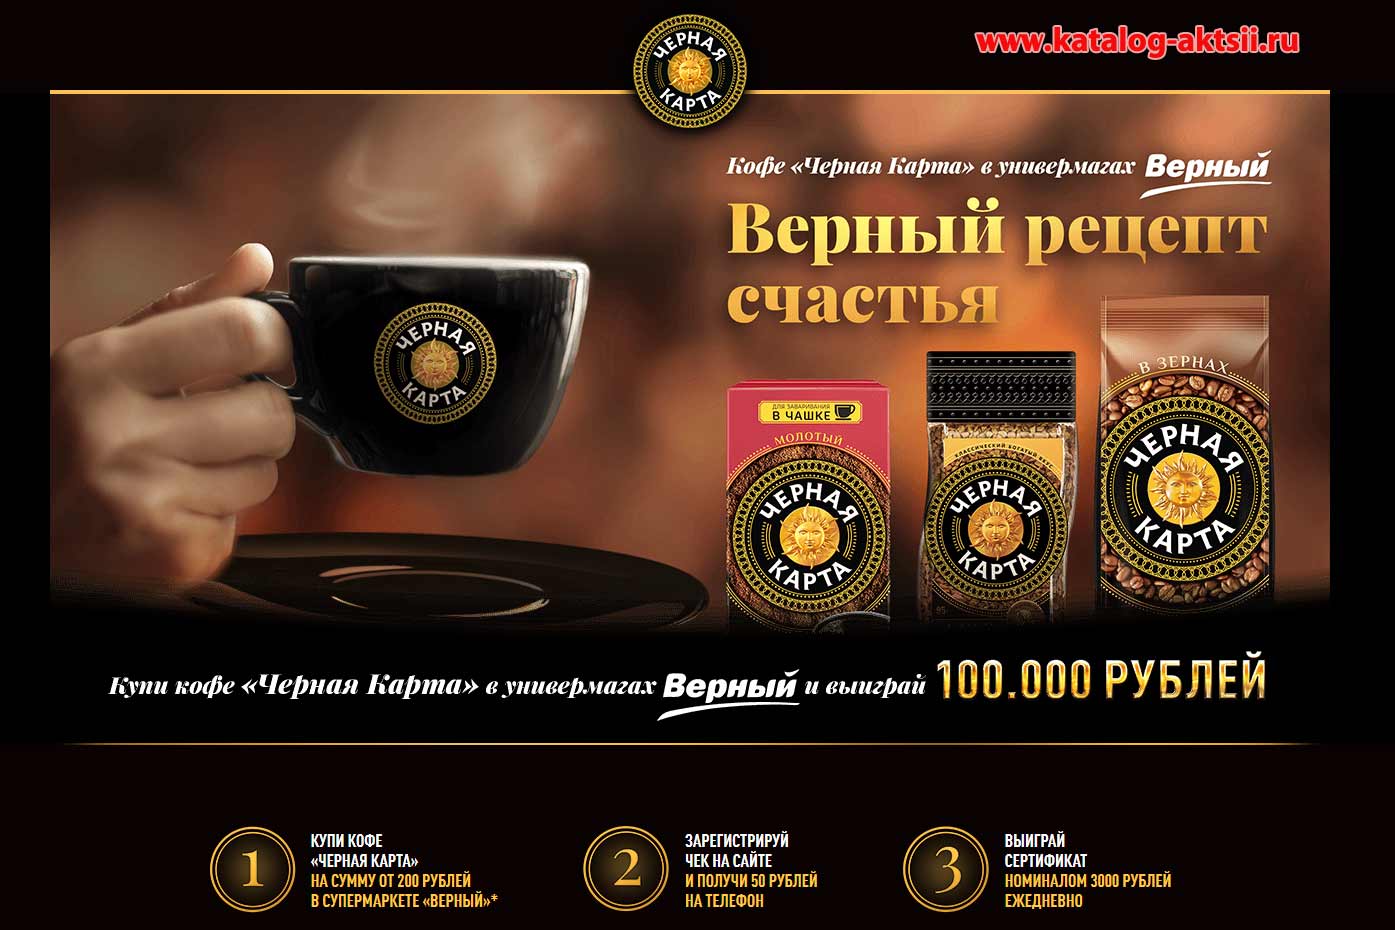 www.promo.chernaya-karta.ru : Регистрация + условия - «Верный рецепт счастья с Черной Картой»